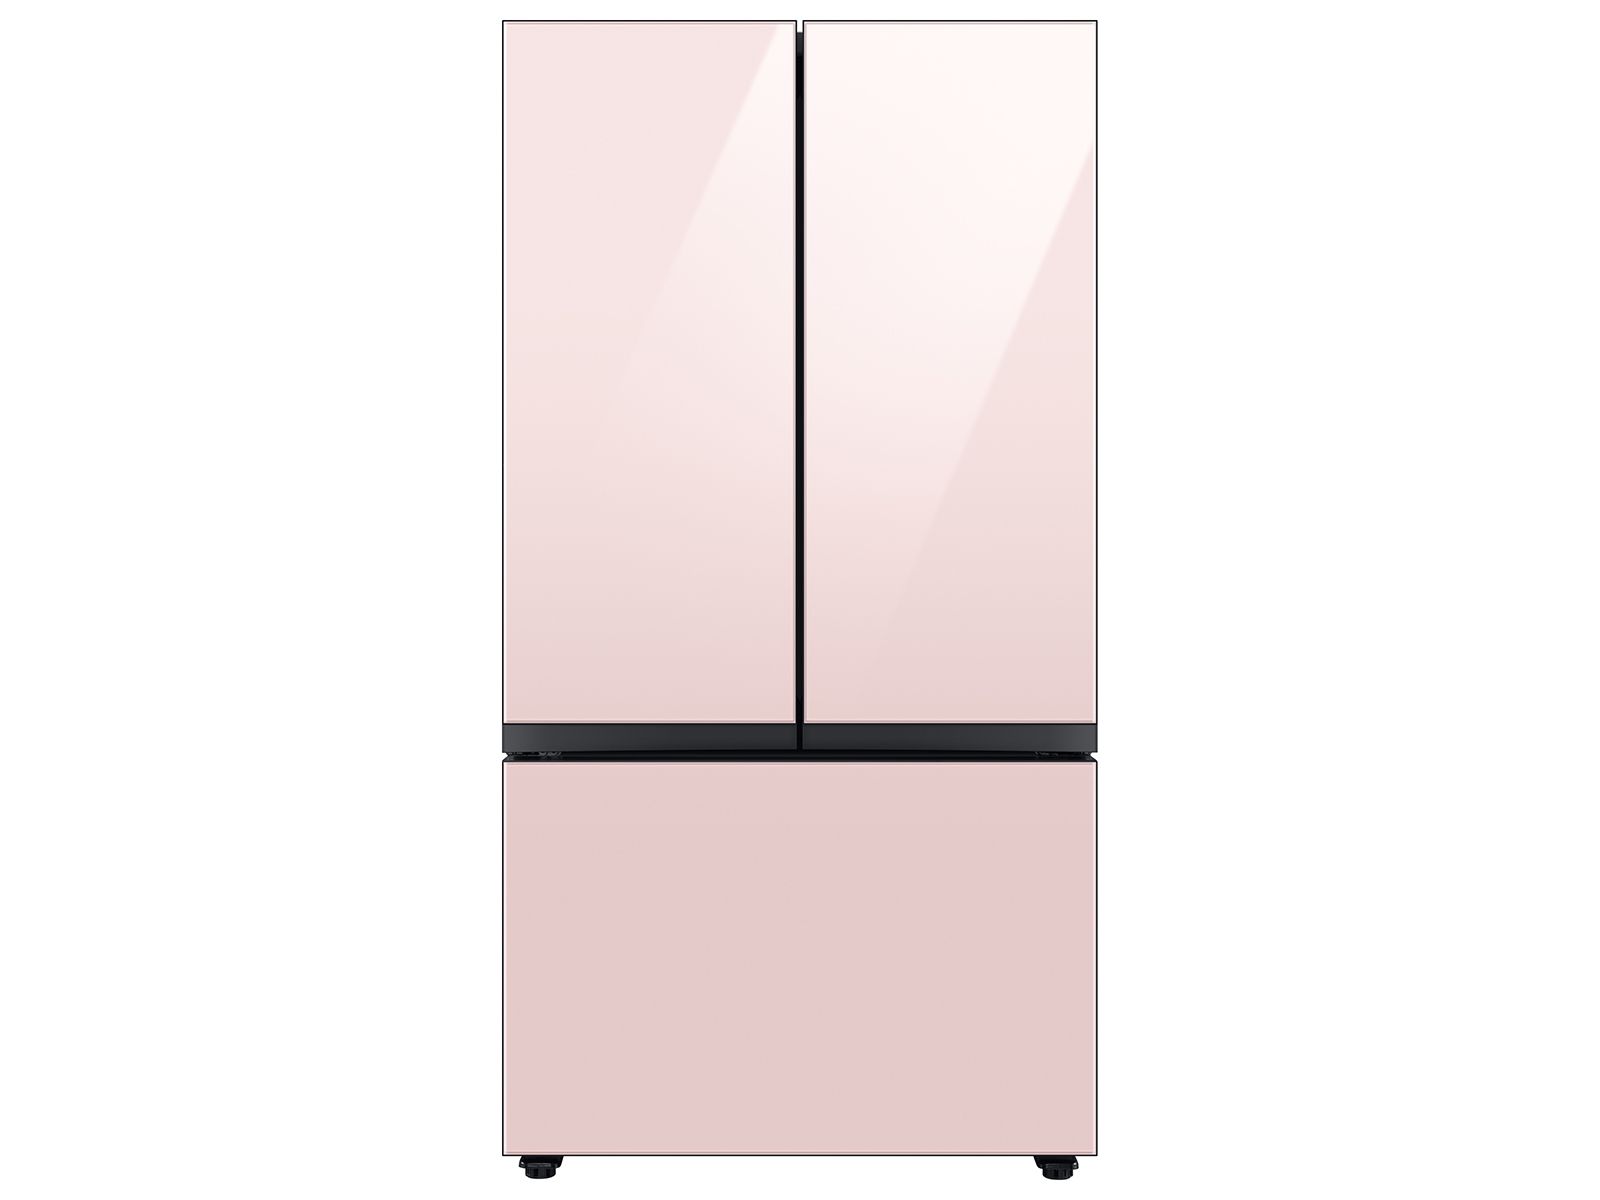 Bespoke 3-Door French Door Refrigerator (30 cu. ft.) with Beverage Center&trade; in Rose Pink Glass